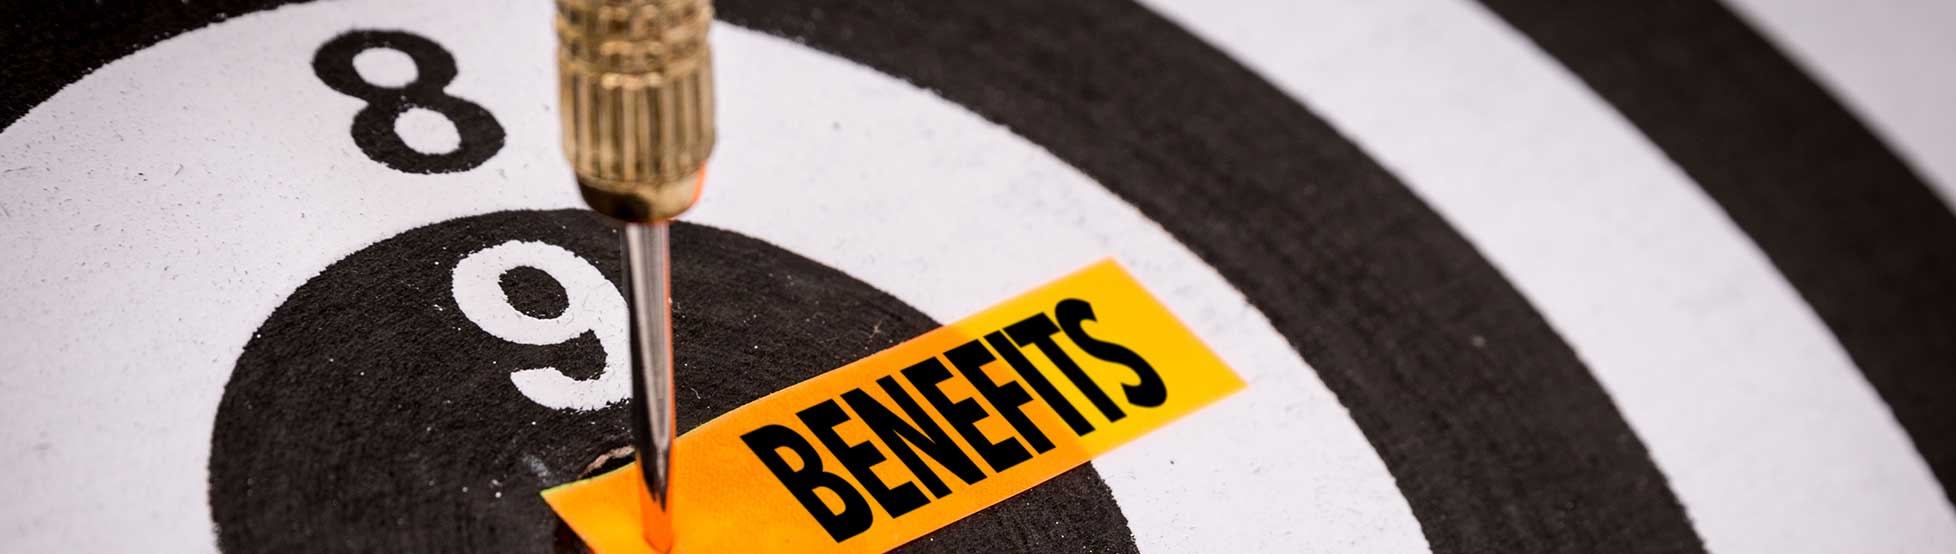 successful-employee-benefits-scheme4